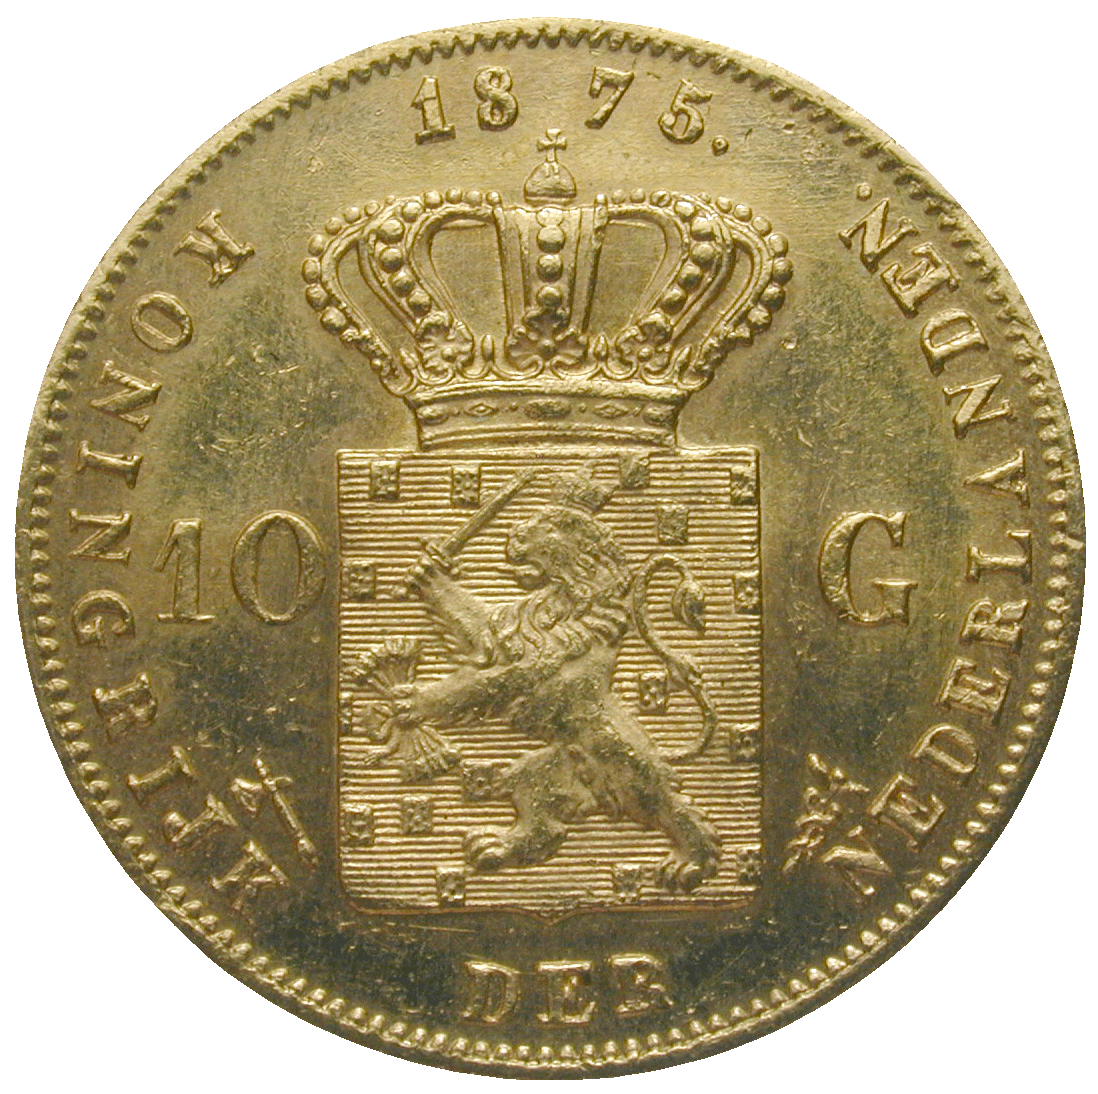 Königreich der Niederlande, Wilhelm III., 10 Gulden 1875 (reverse)